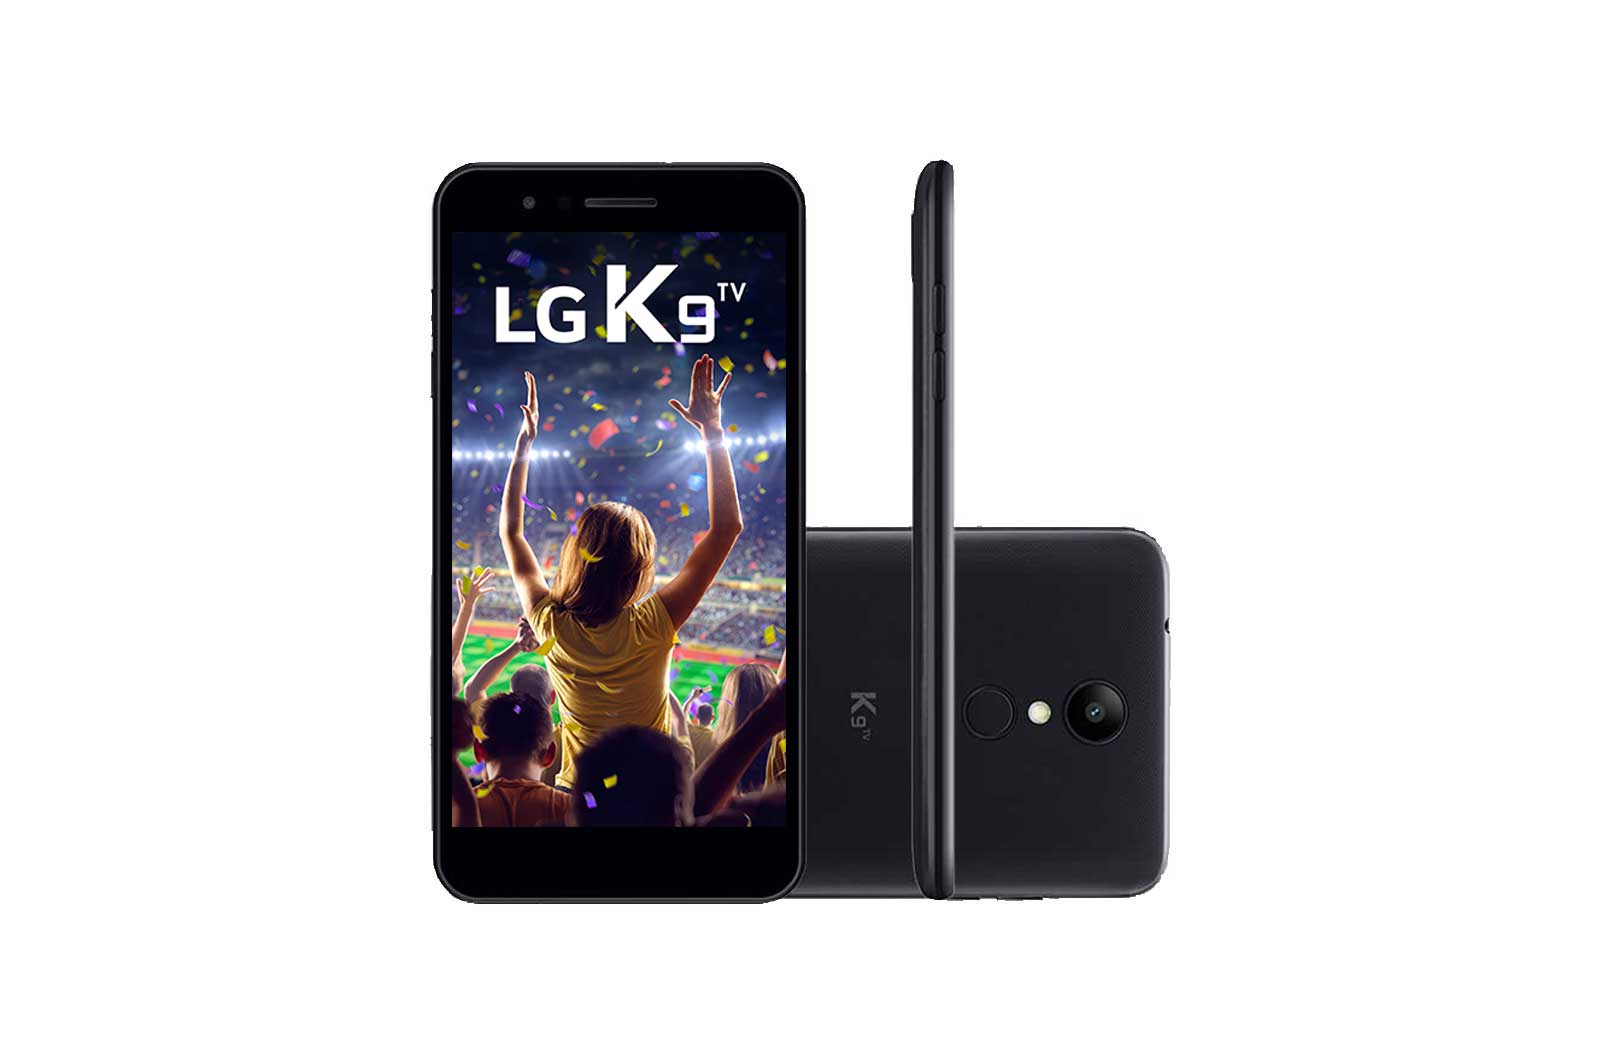 LG Smartphone LG K9 com TV Digital Dual Chip e Memória interna 16 GB e 2GB  RAM | LG Brasil